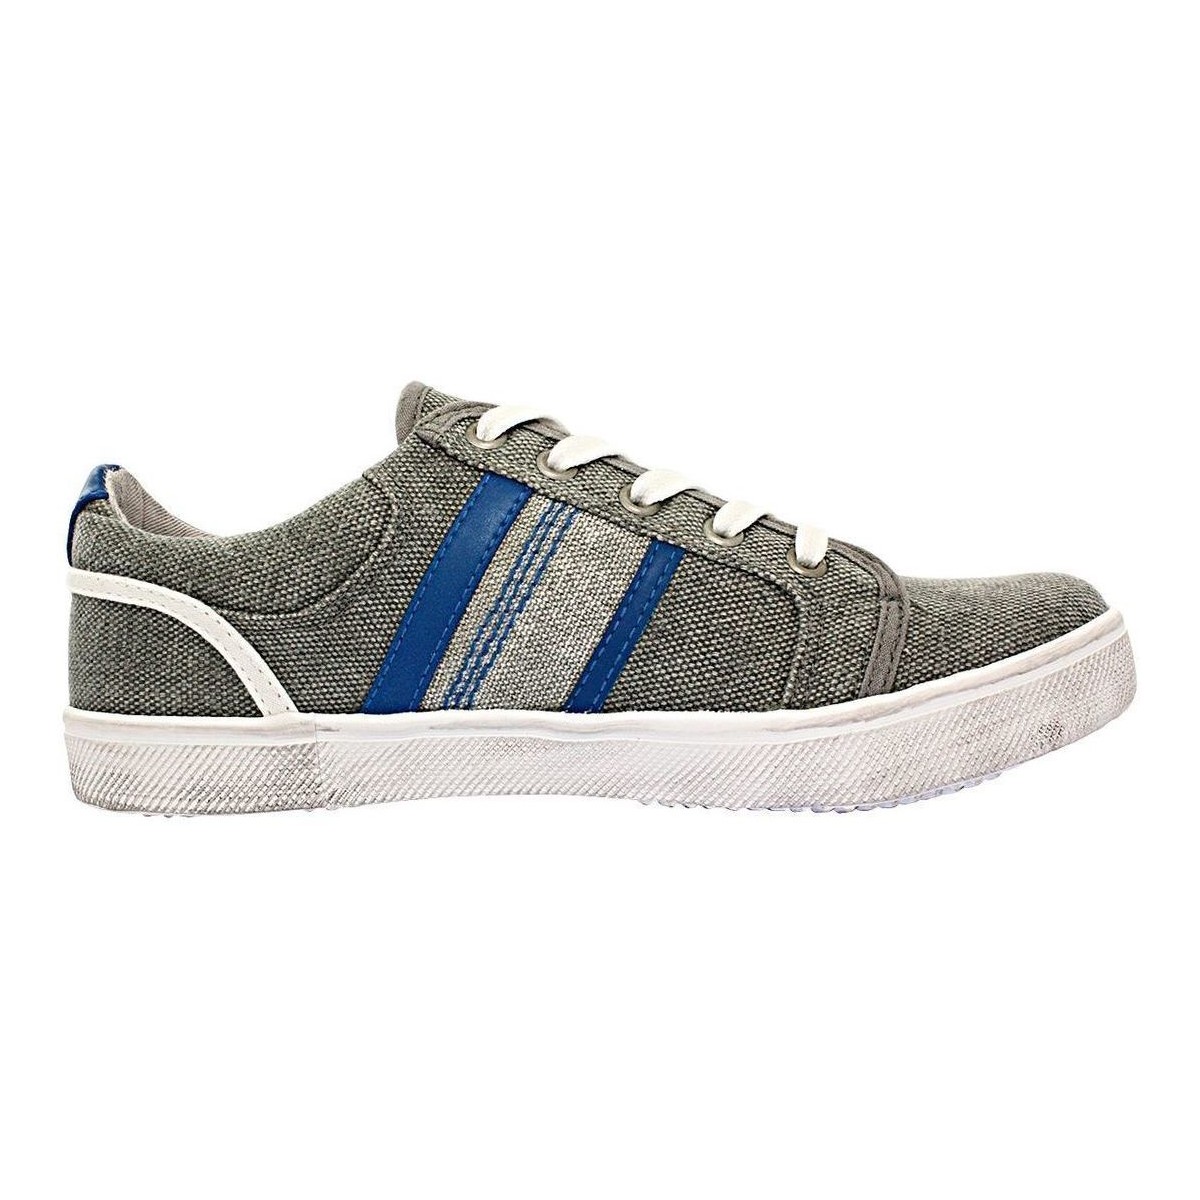 Παπούτσια Αγόρι Sneakers Kaporal TOURY Grey